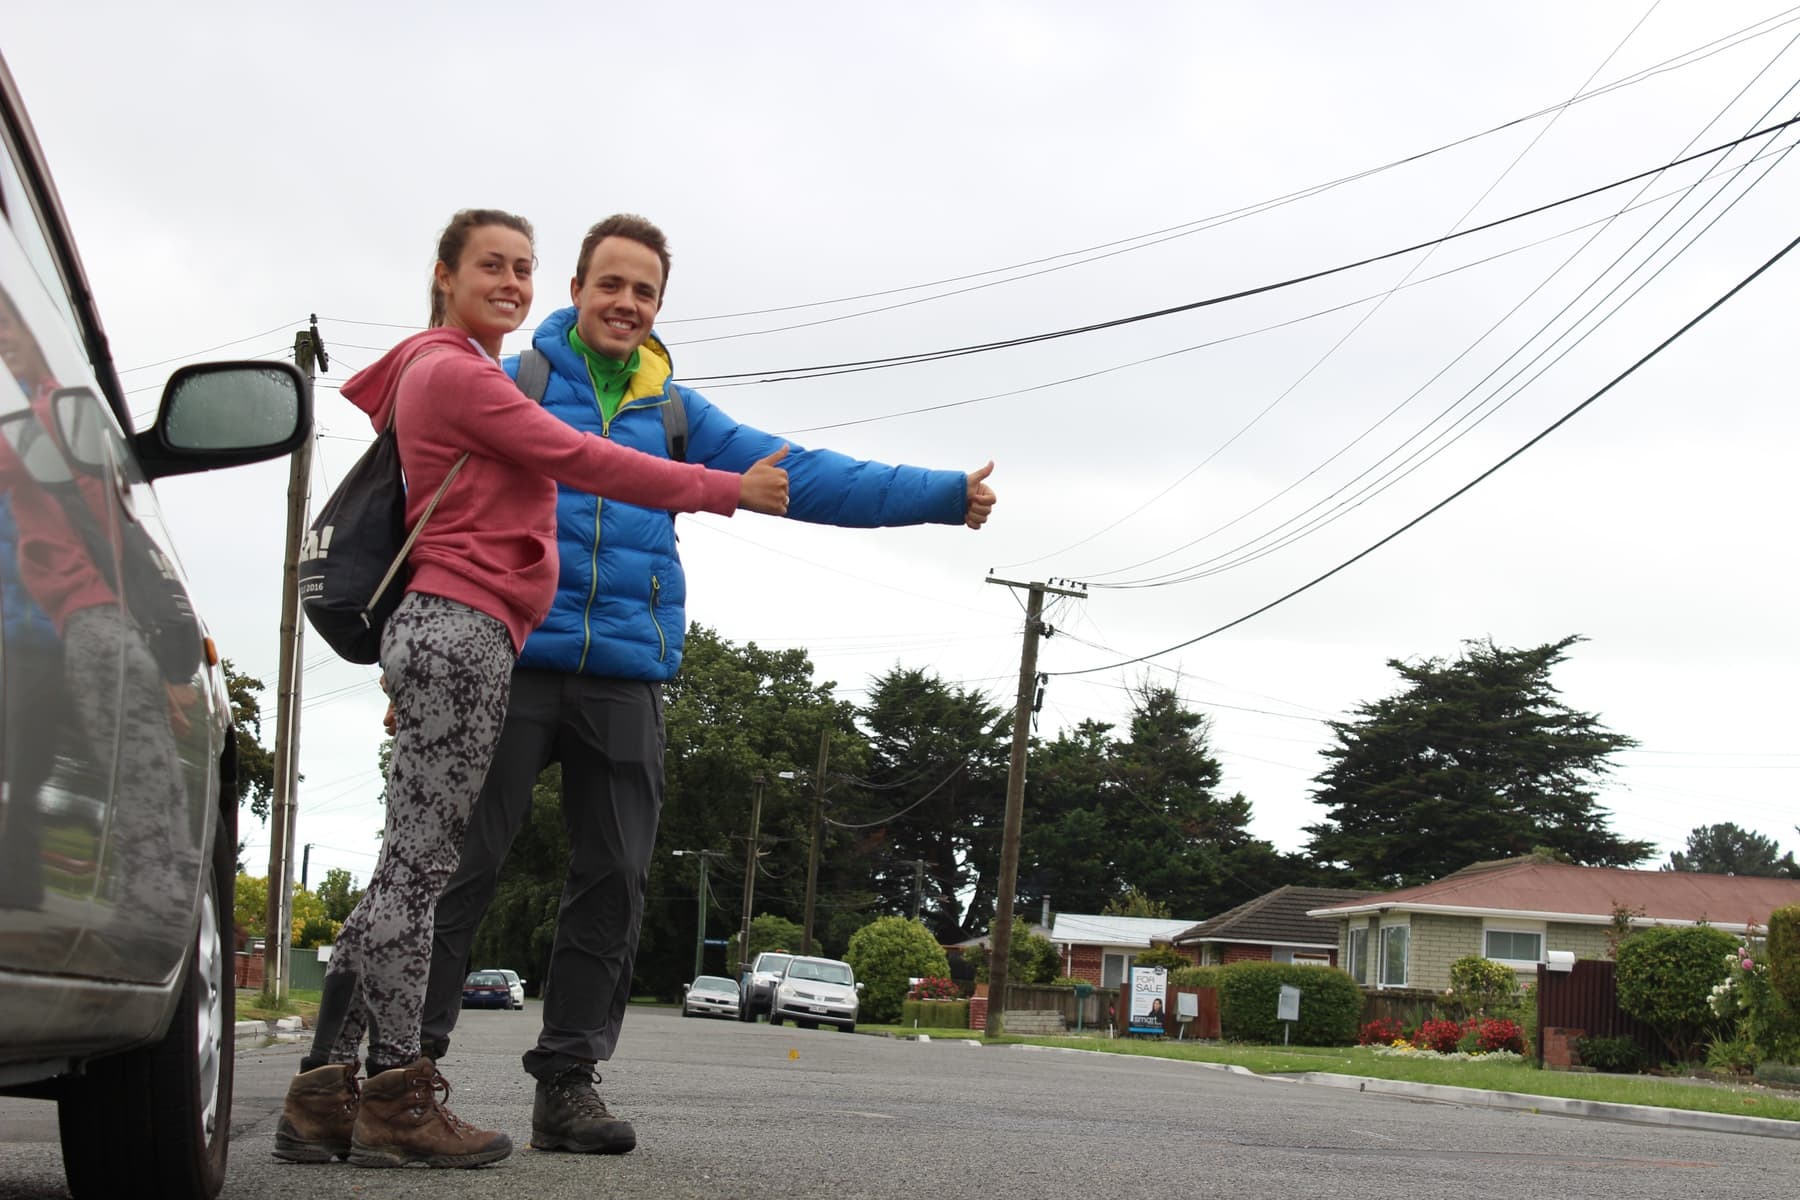 Zusammen Hitchhiken in Neuseeland